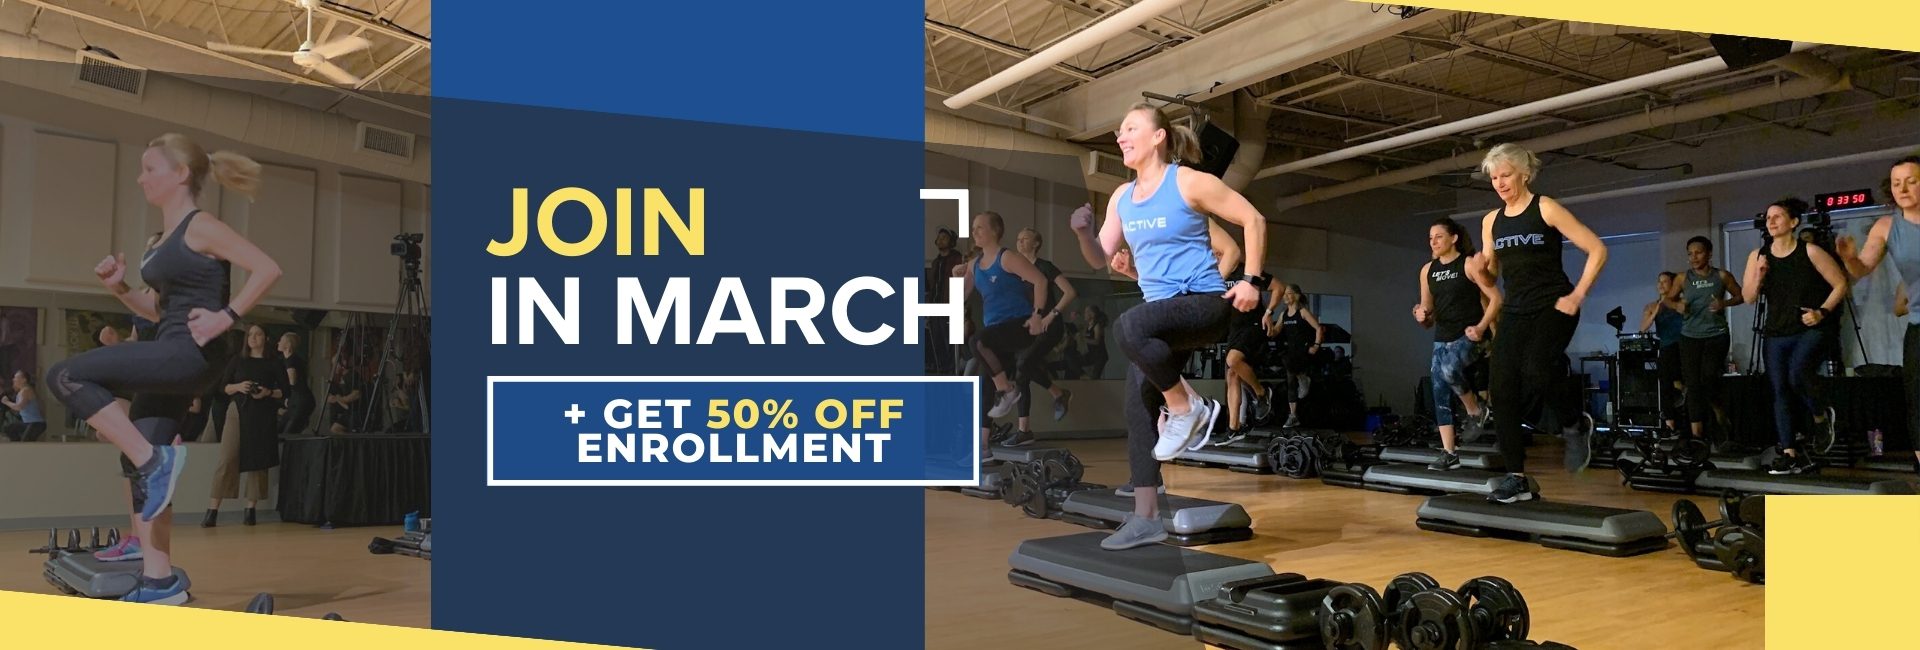 offer march - join get 50% enrollment